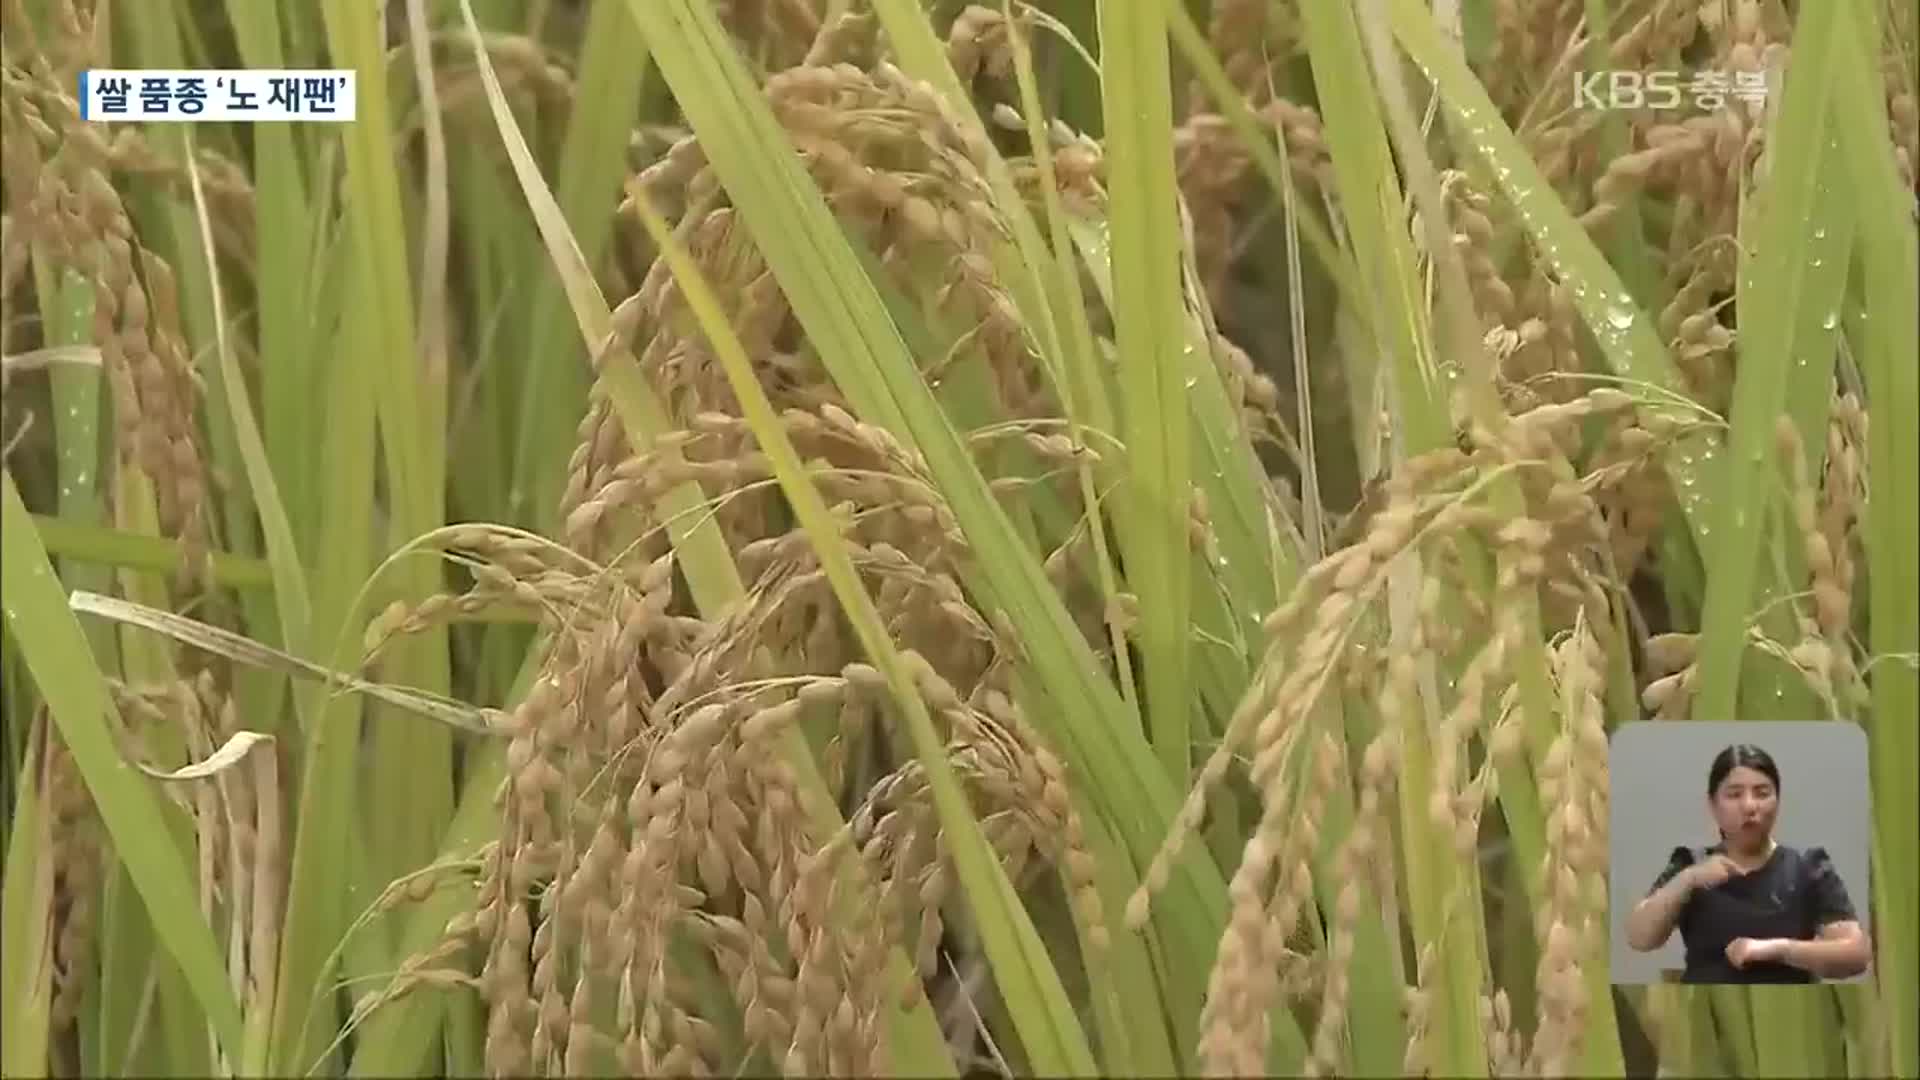 쌀도 ‘노 재팬’…토종 품종으로 전면 대체